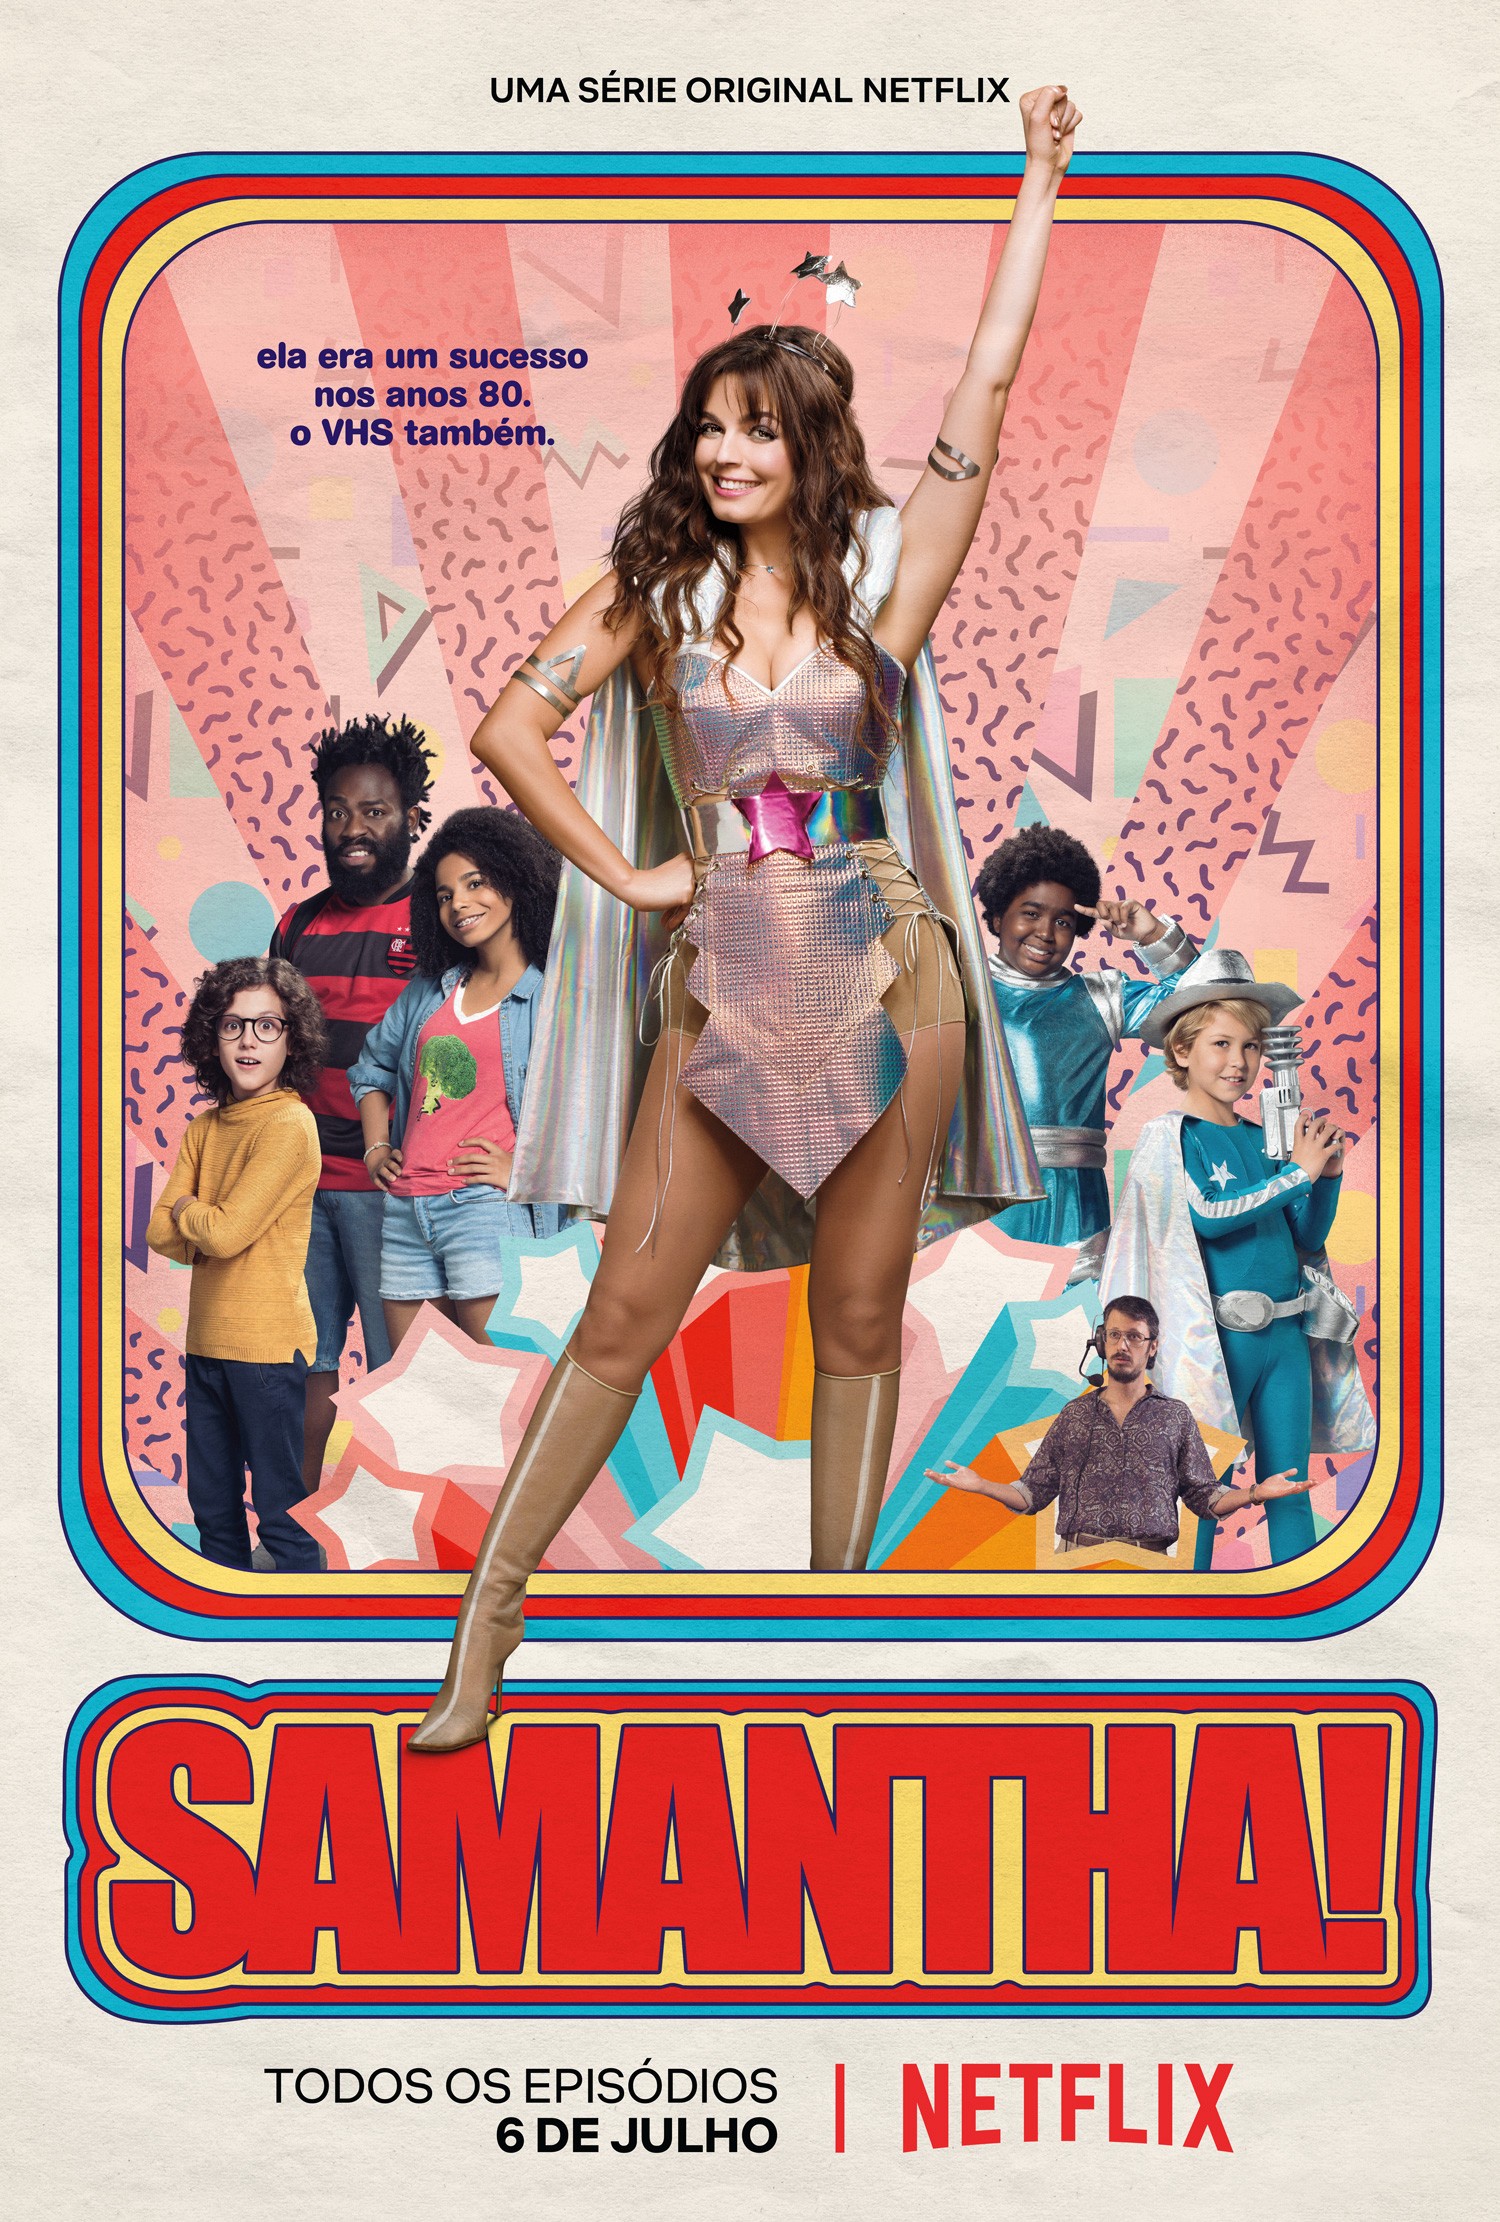 Samantha! (Phần 2) - Samantha! (Season 2) (2019)